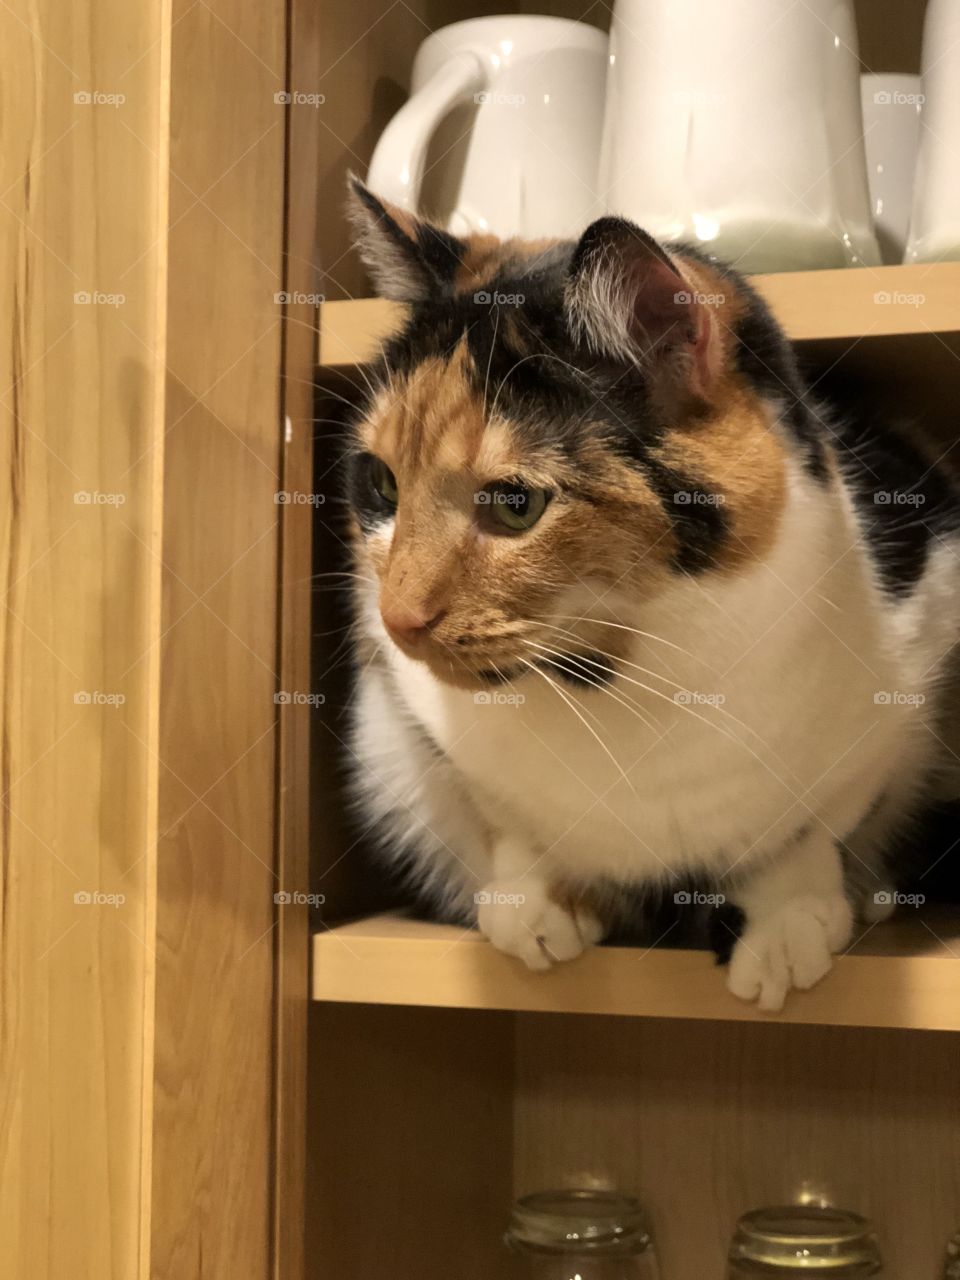 Cat in the cupboard 